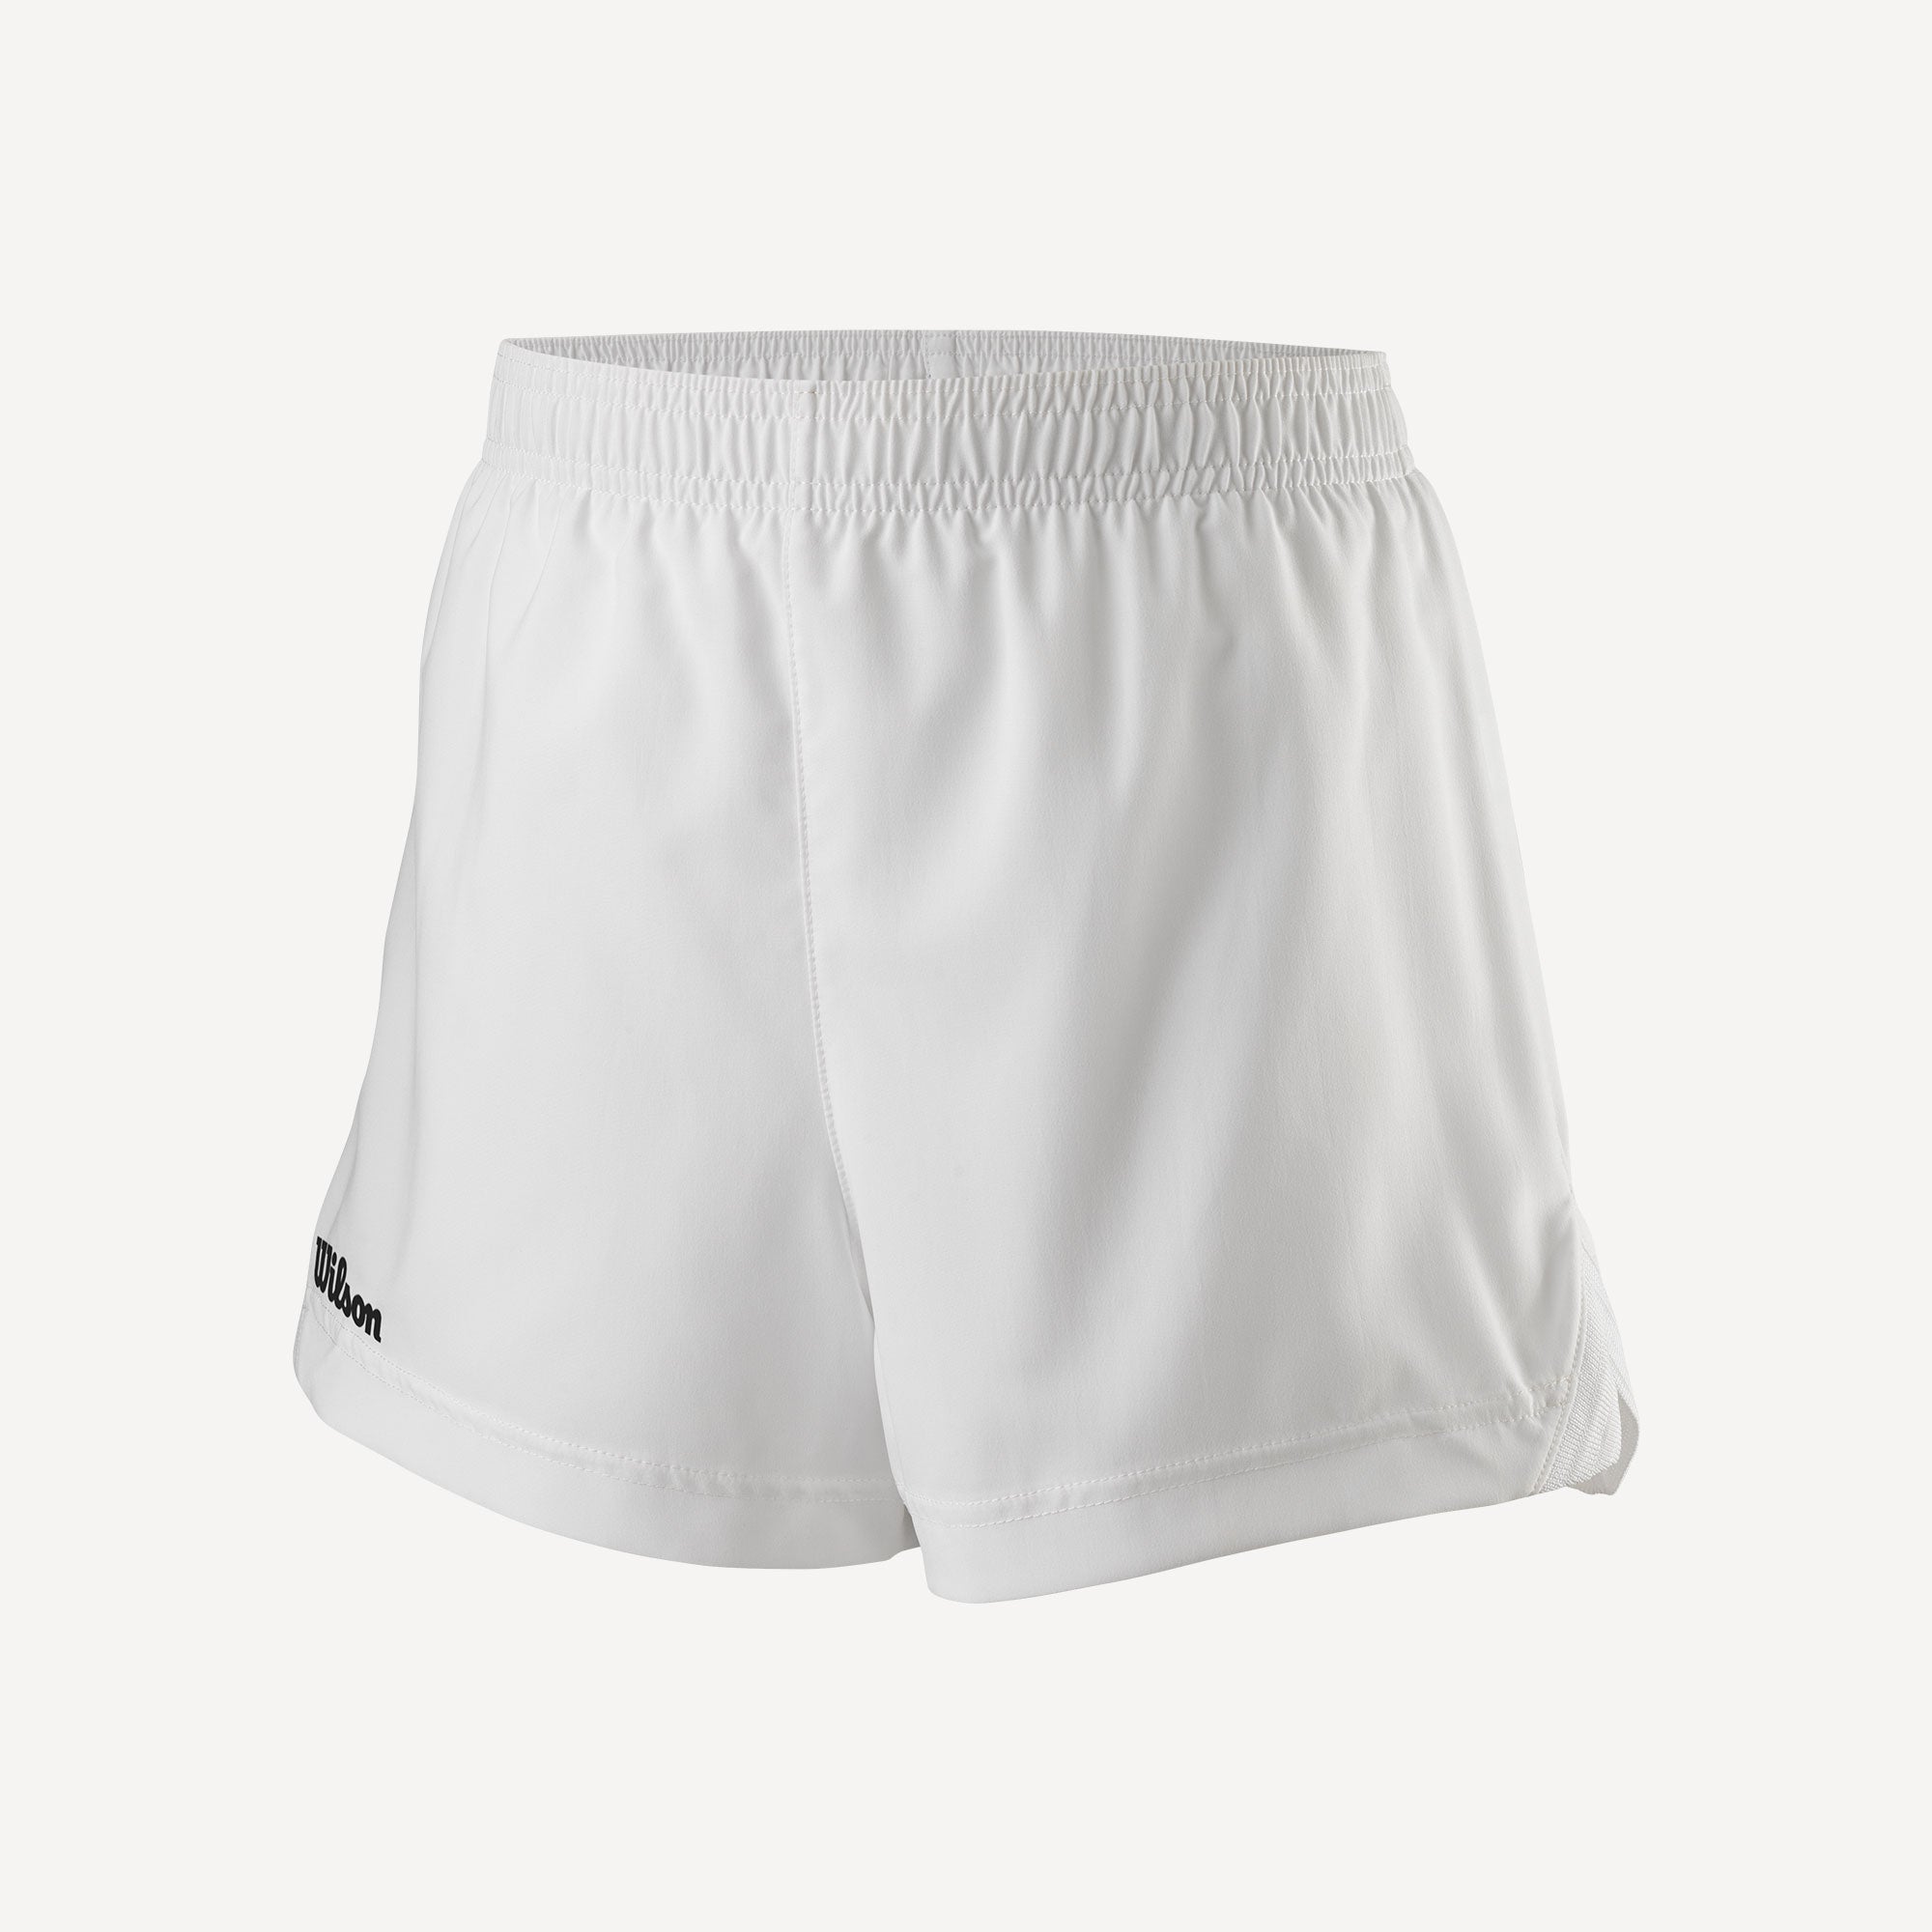 Wilson Team 2 Girls' 3.5-Inch Tennis Shorts White (1)